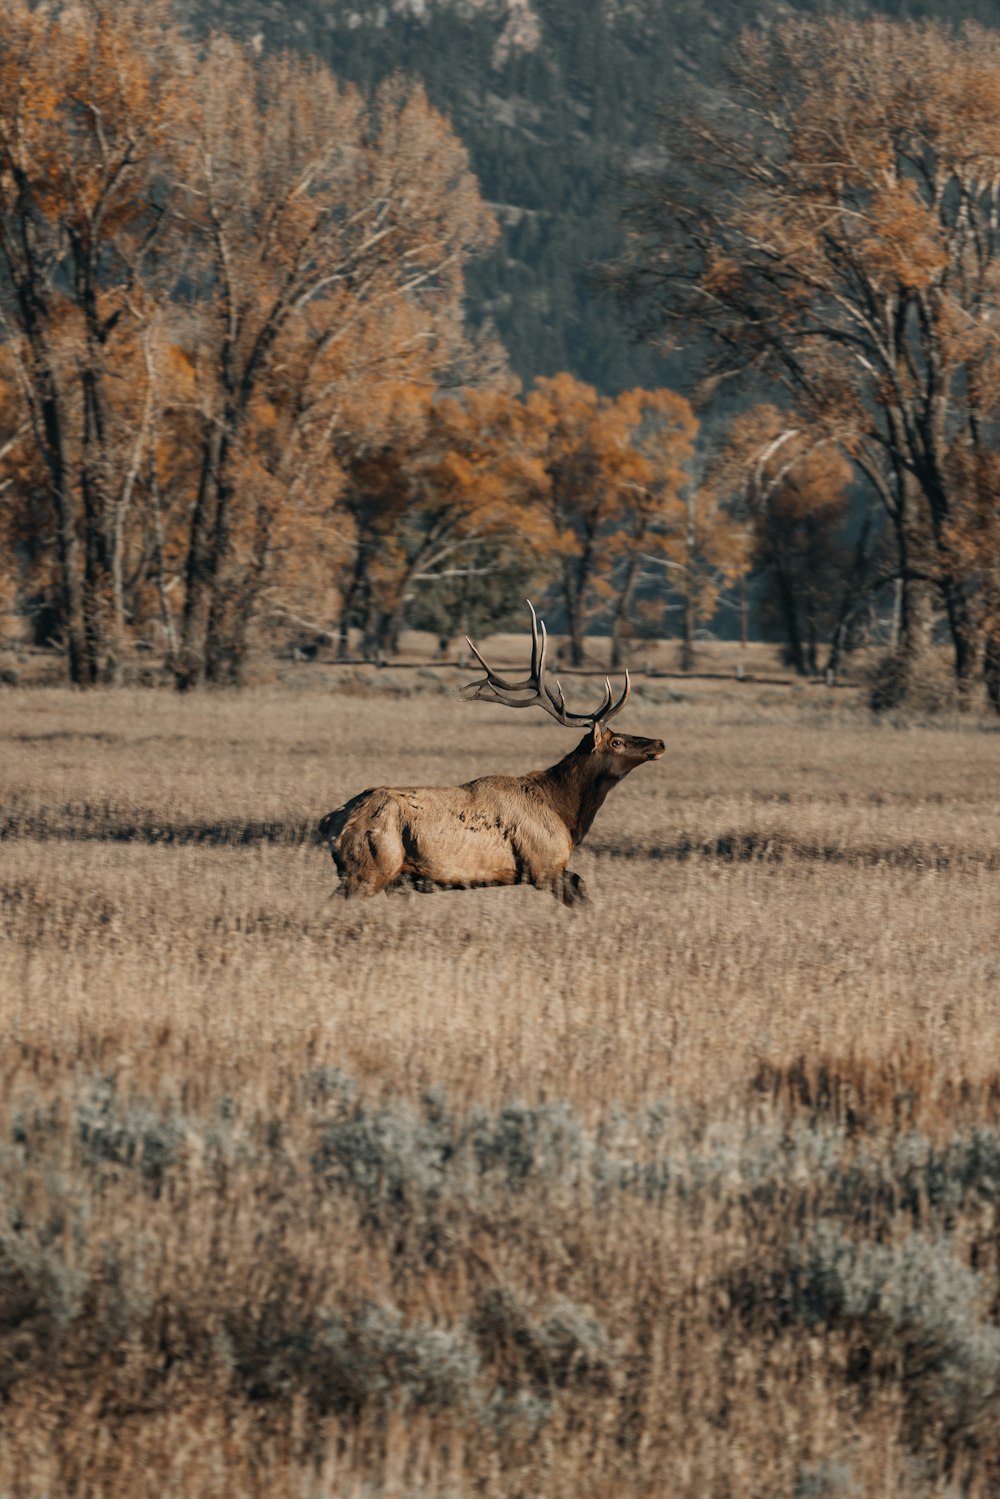 a large elk in a field